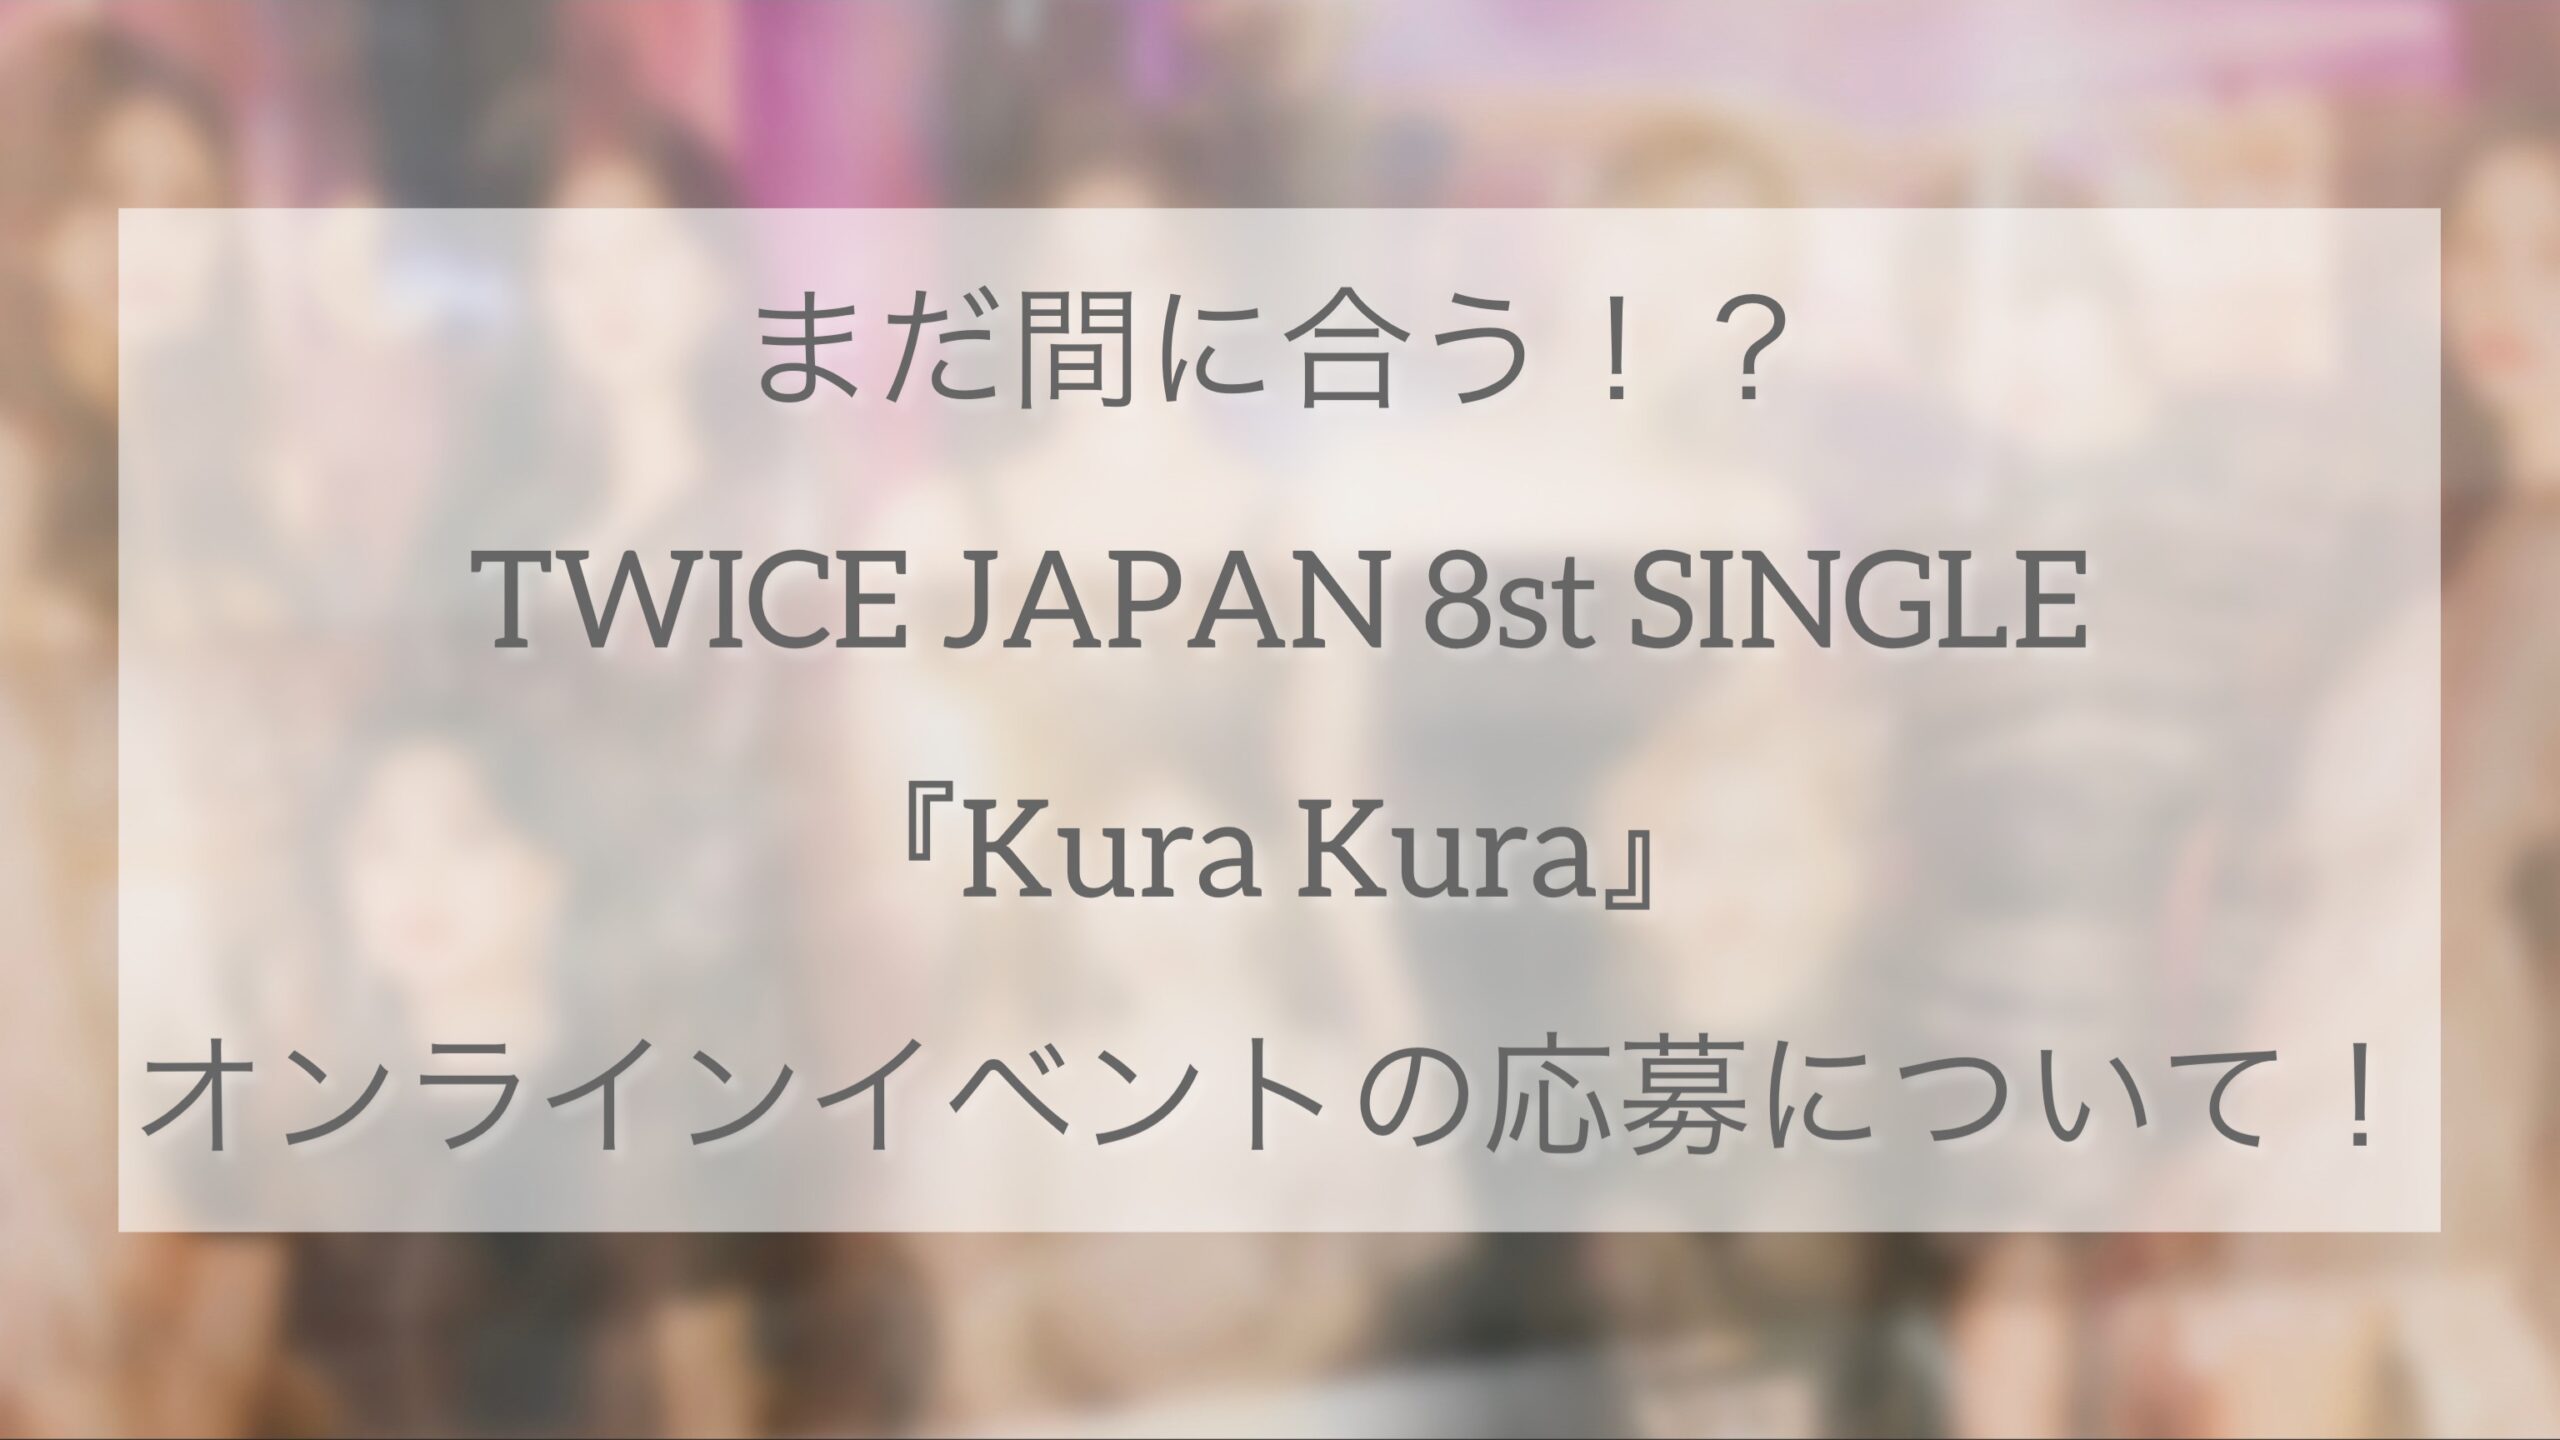 まだ間に合う！？TWICE JAPAN 8st SINGLE 『Kura Kura』のオンライン 